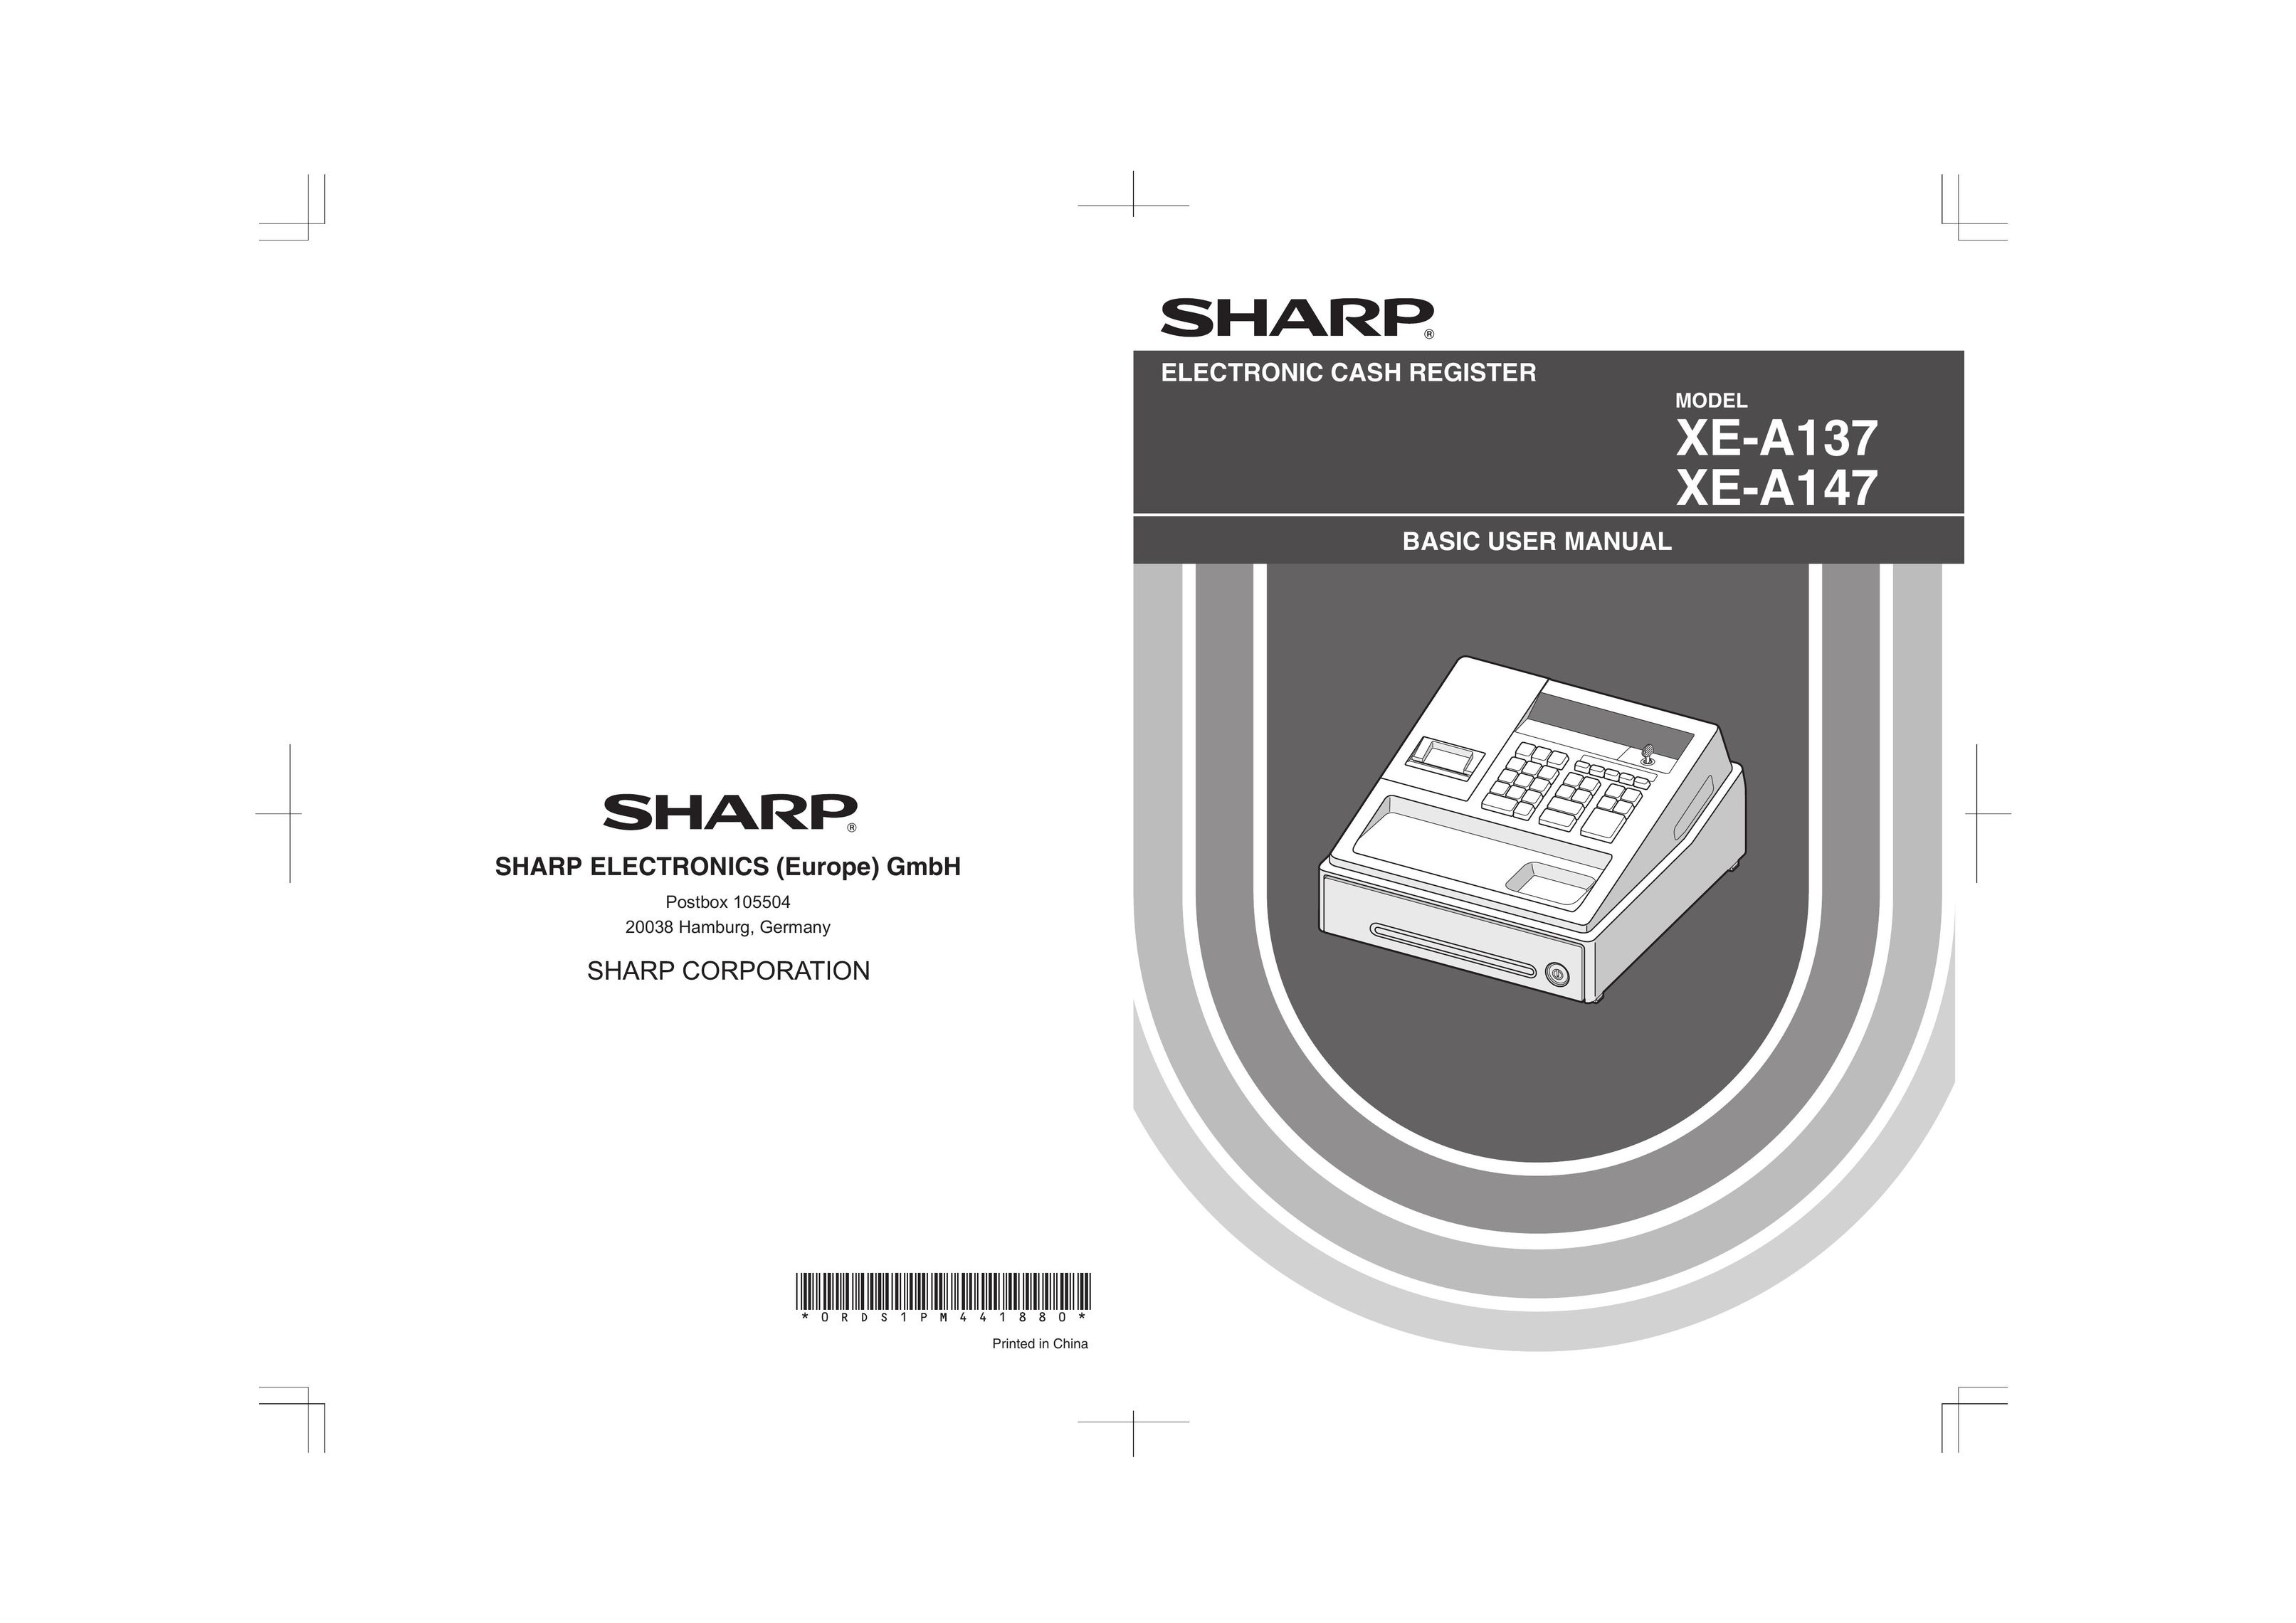 Sharp XE-A147 Cash Register User Manual